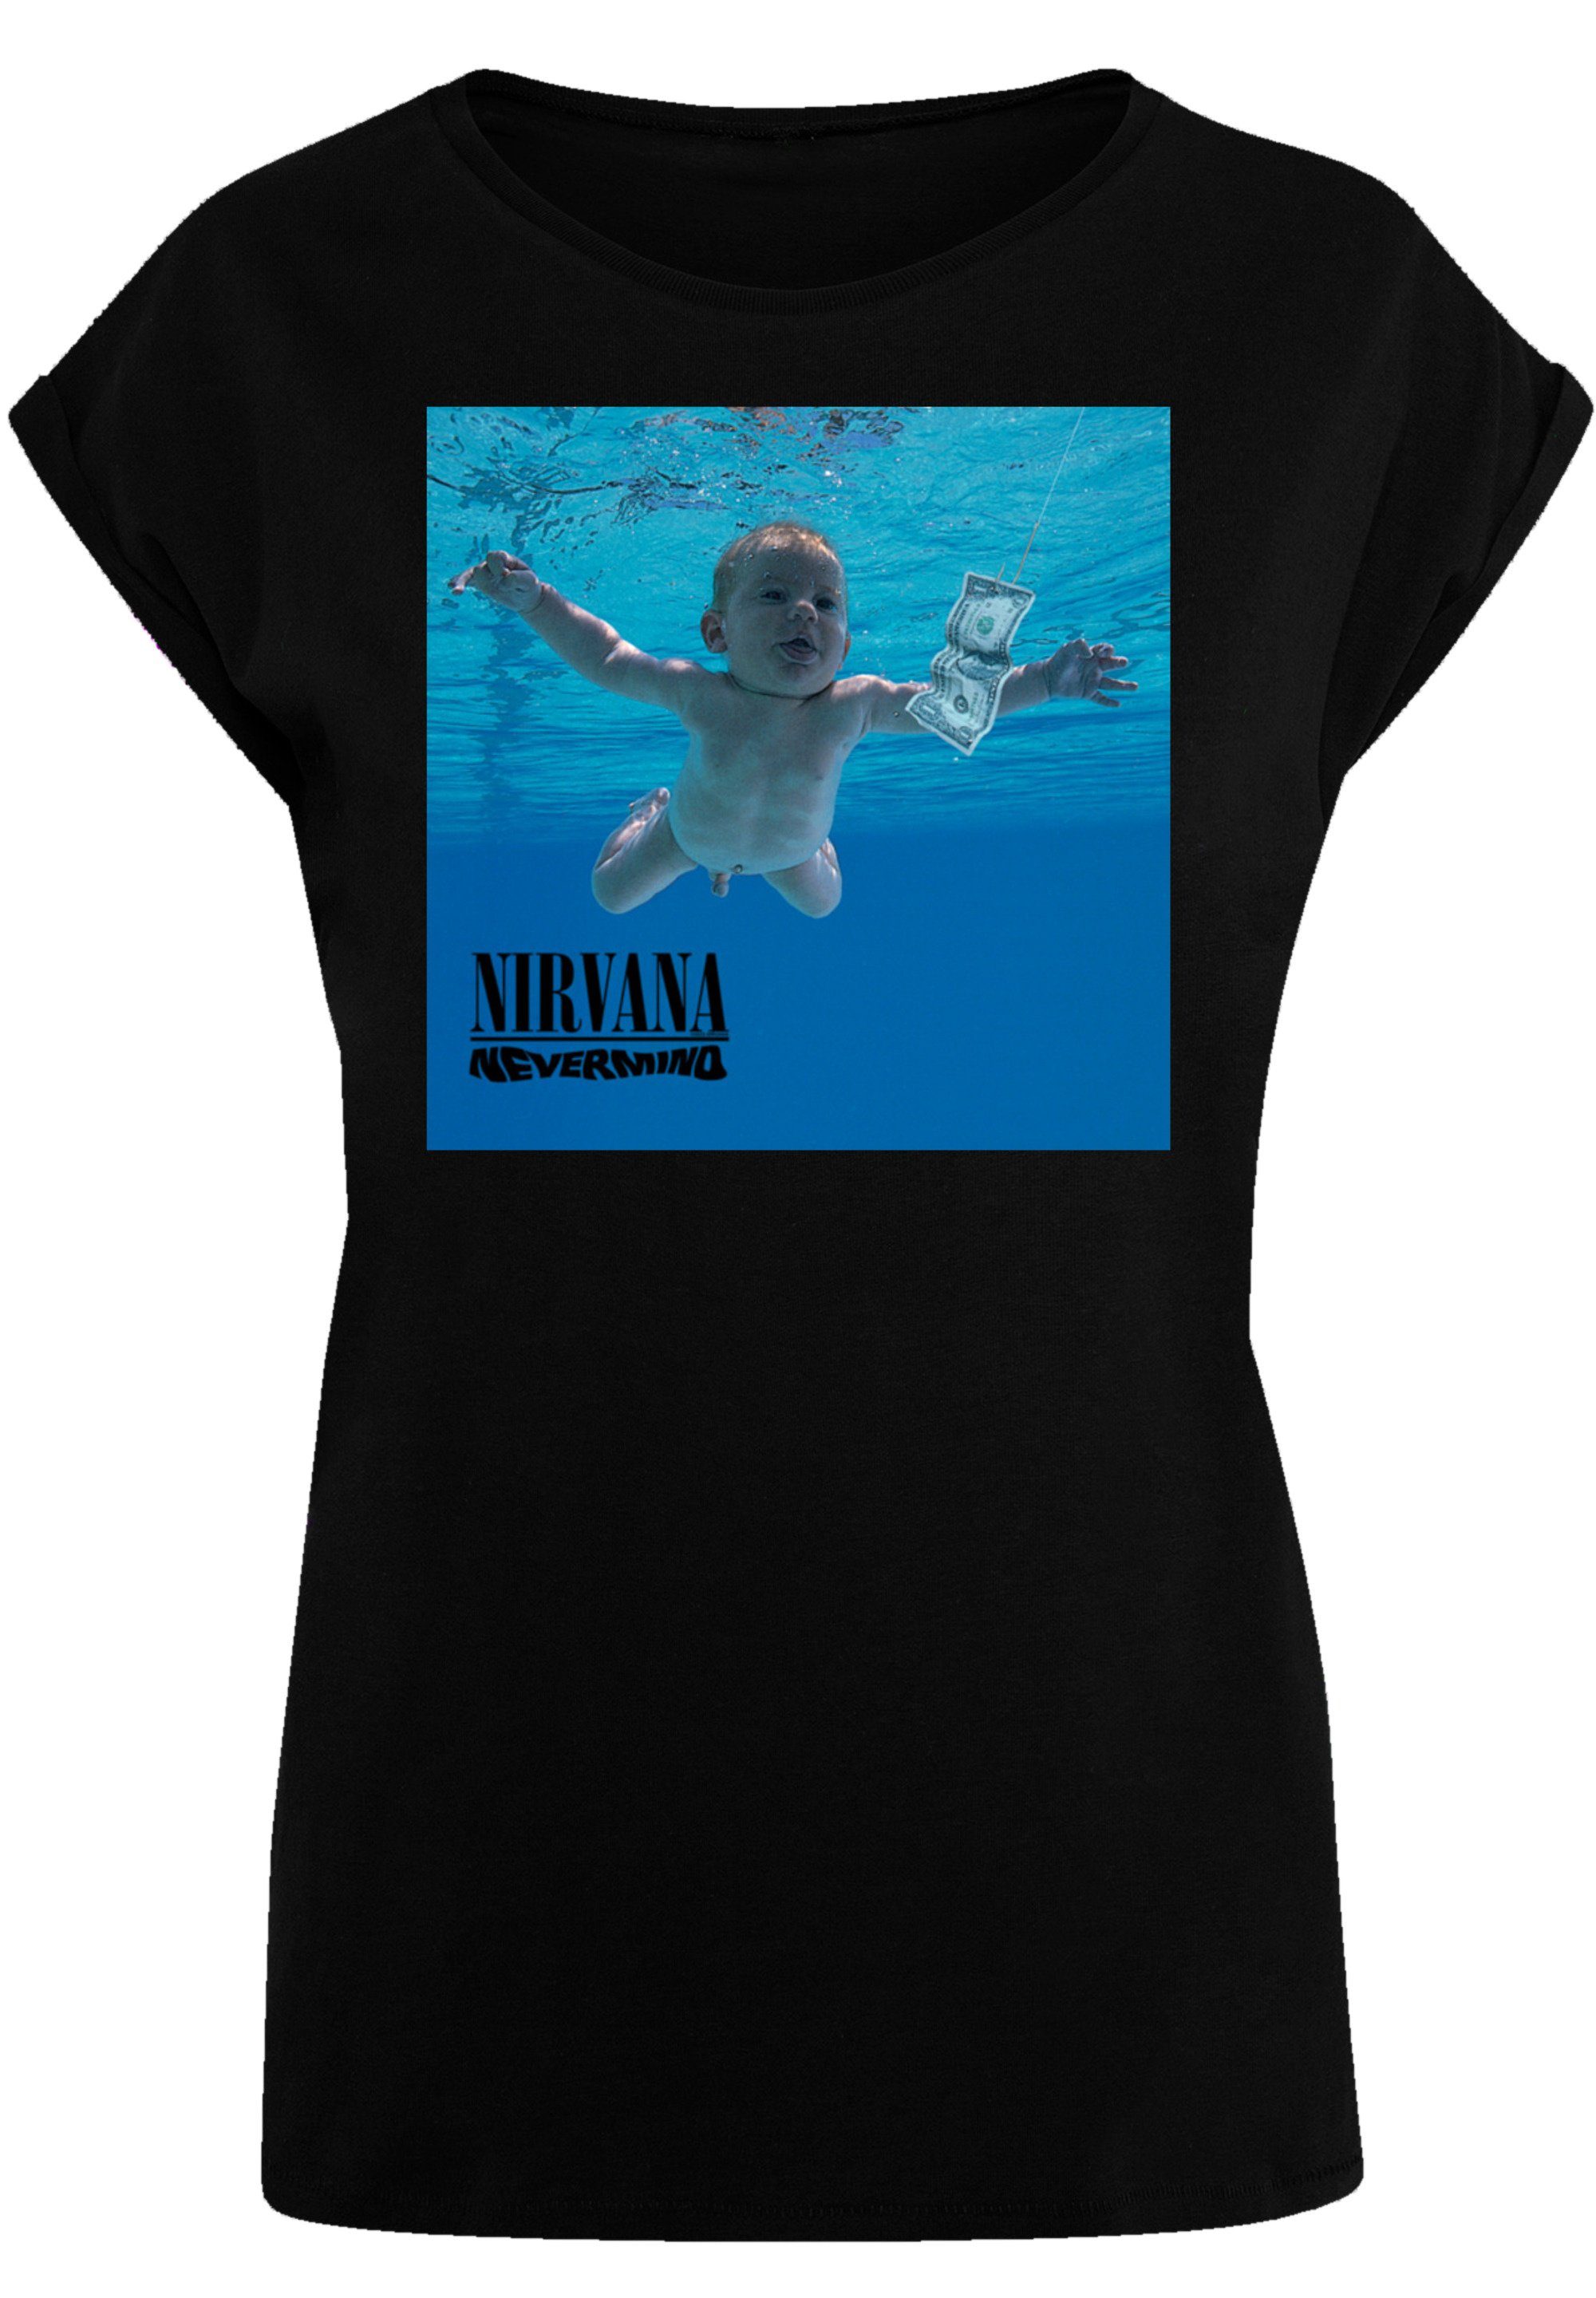 Album schwarz T-Shirt Nevermind Band Premium F4NT4STIC Rock Nirvana Qualität